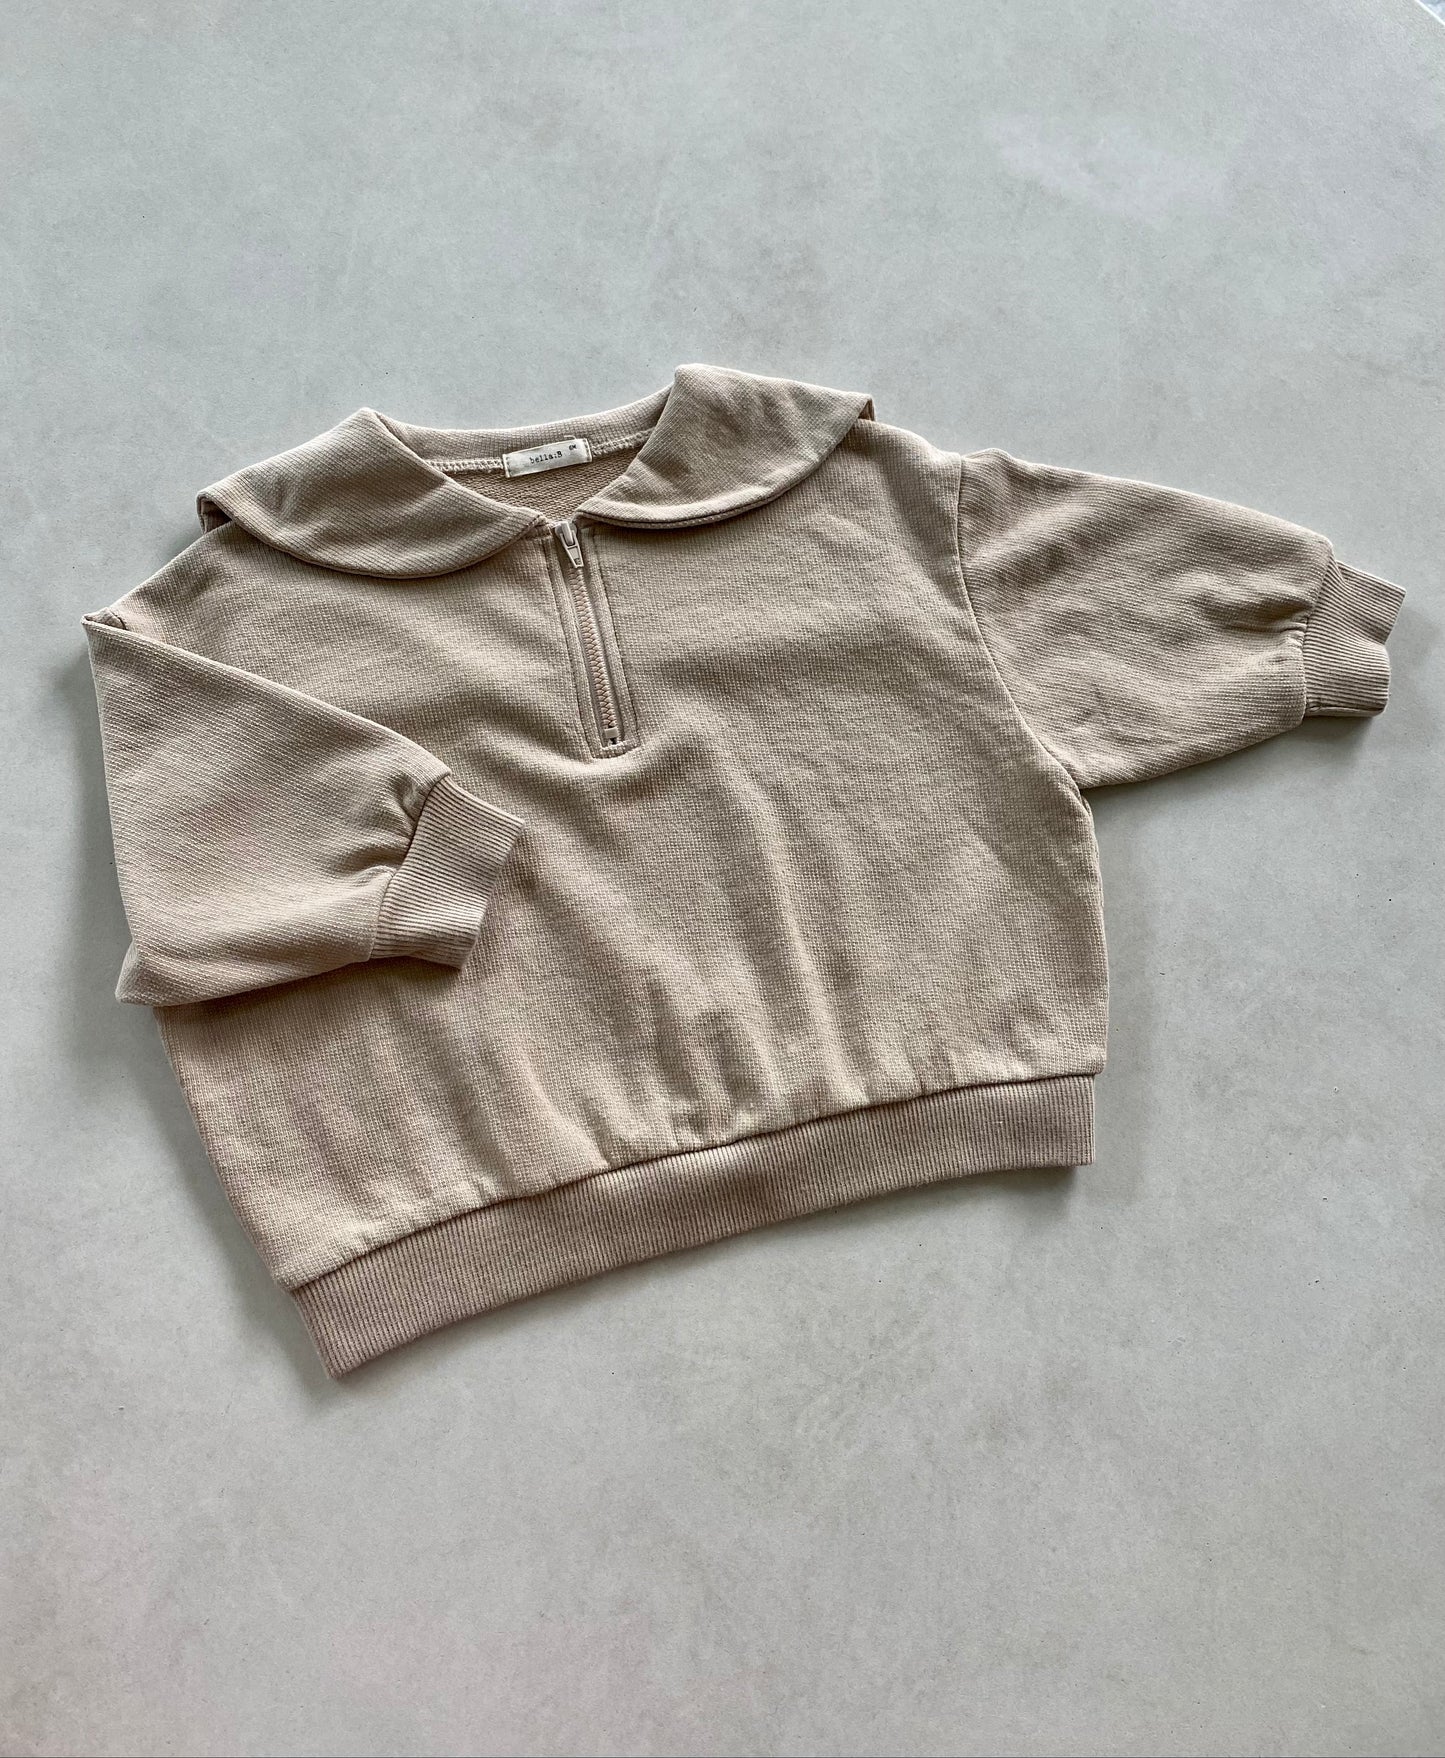 Baby Sailor Zip-up Sweater - Beige